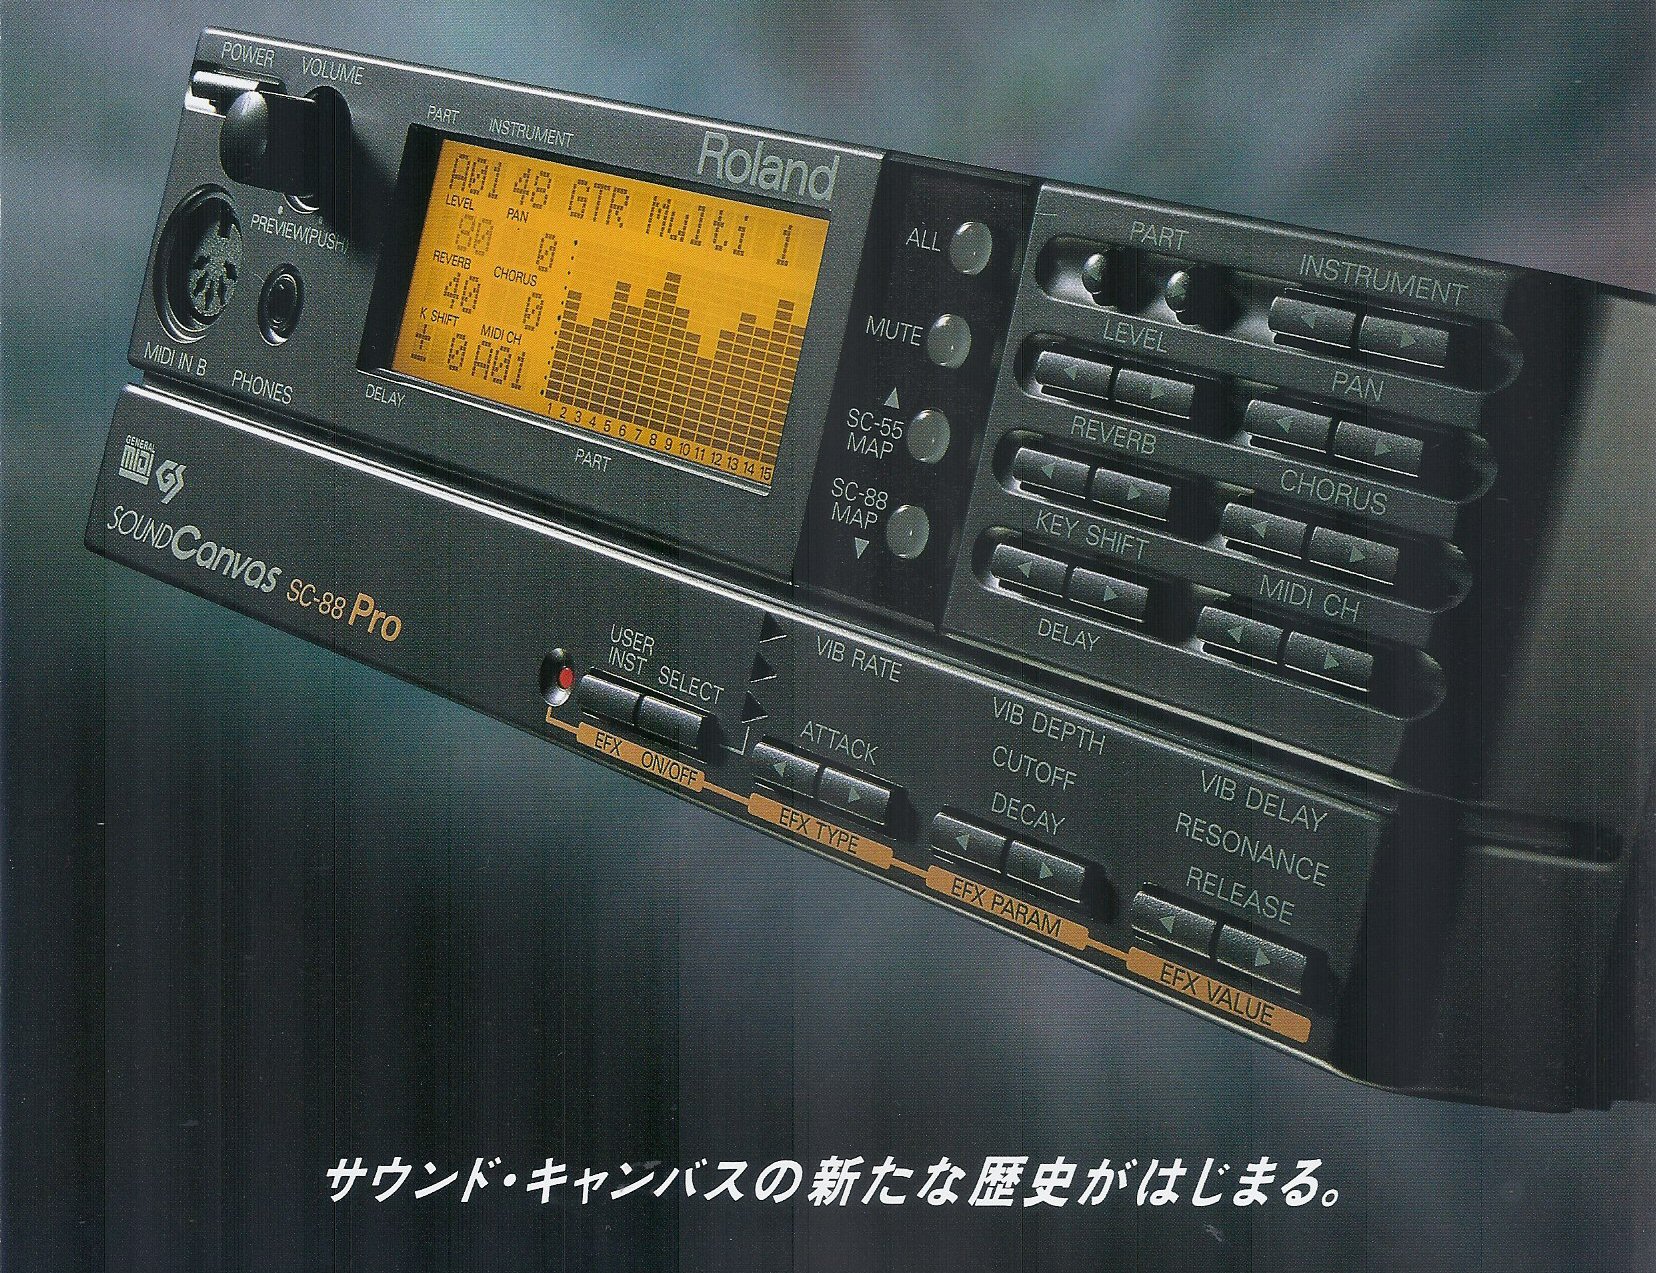 1996年、Roland GS音源の最高峰として登場したSC-88Pro | 藤本健の